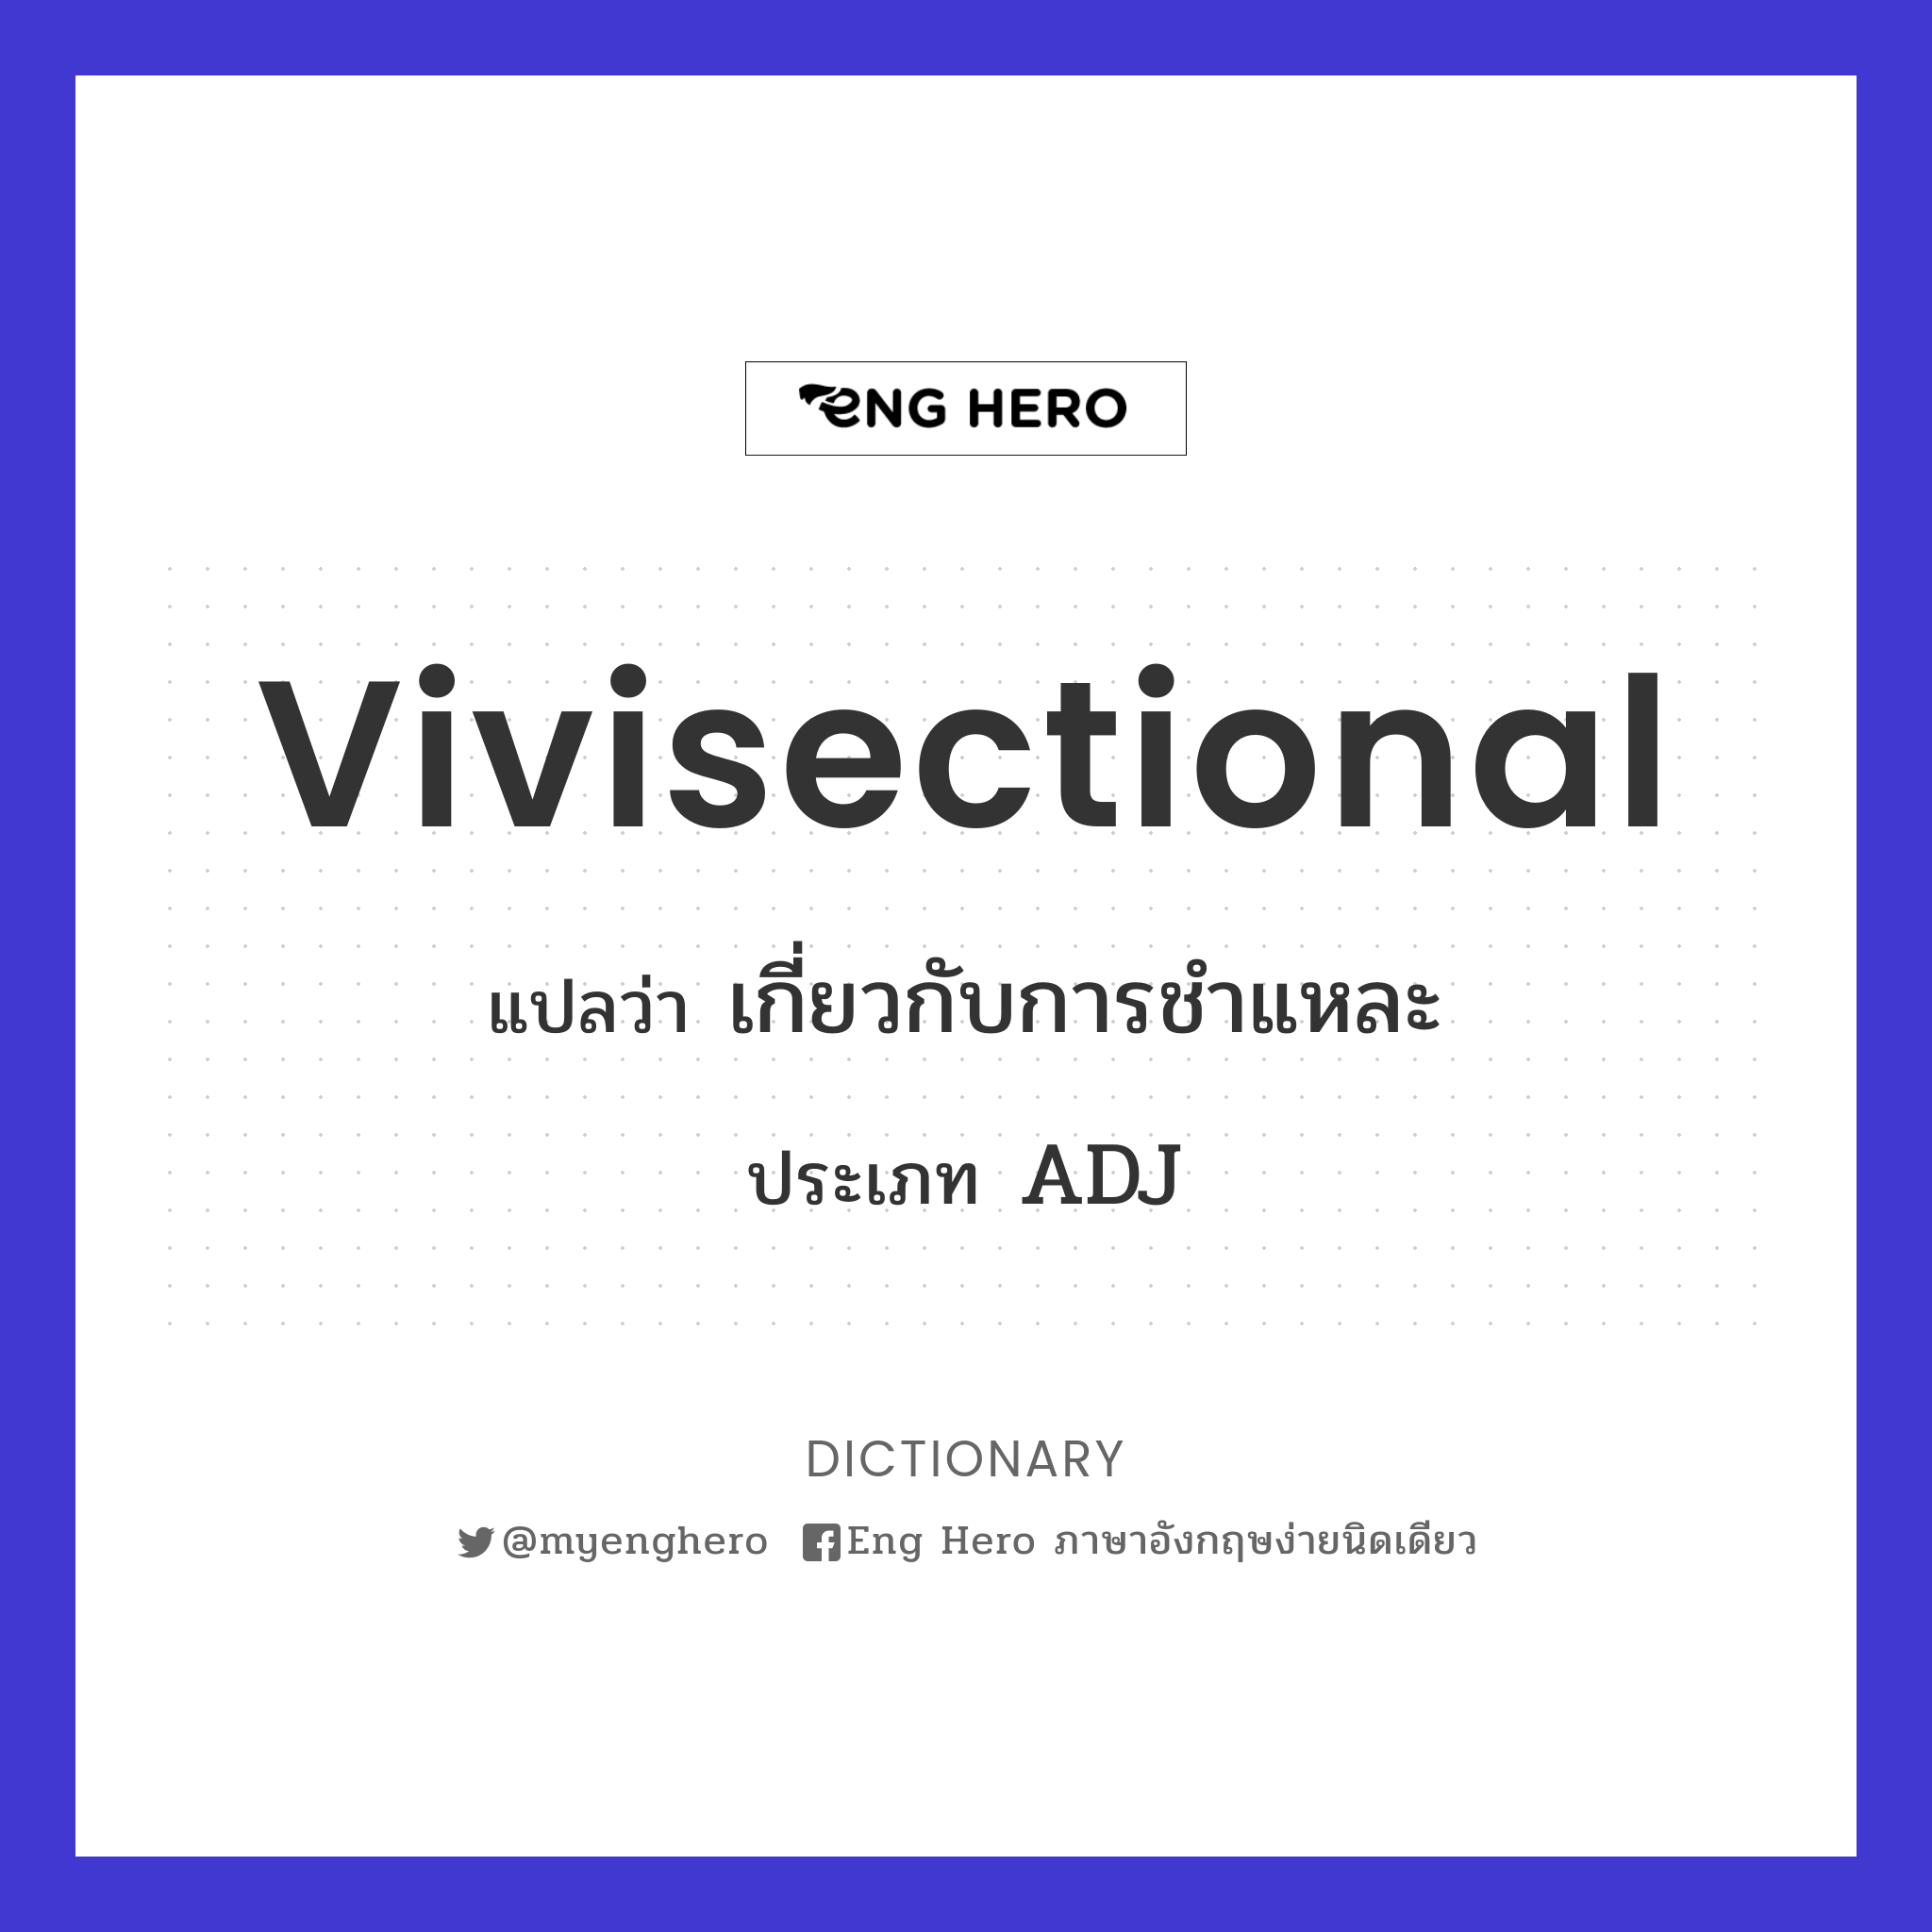 vivisectional